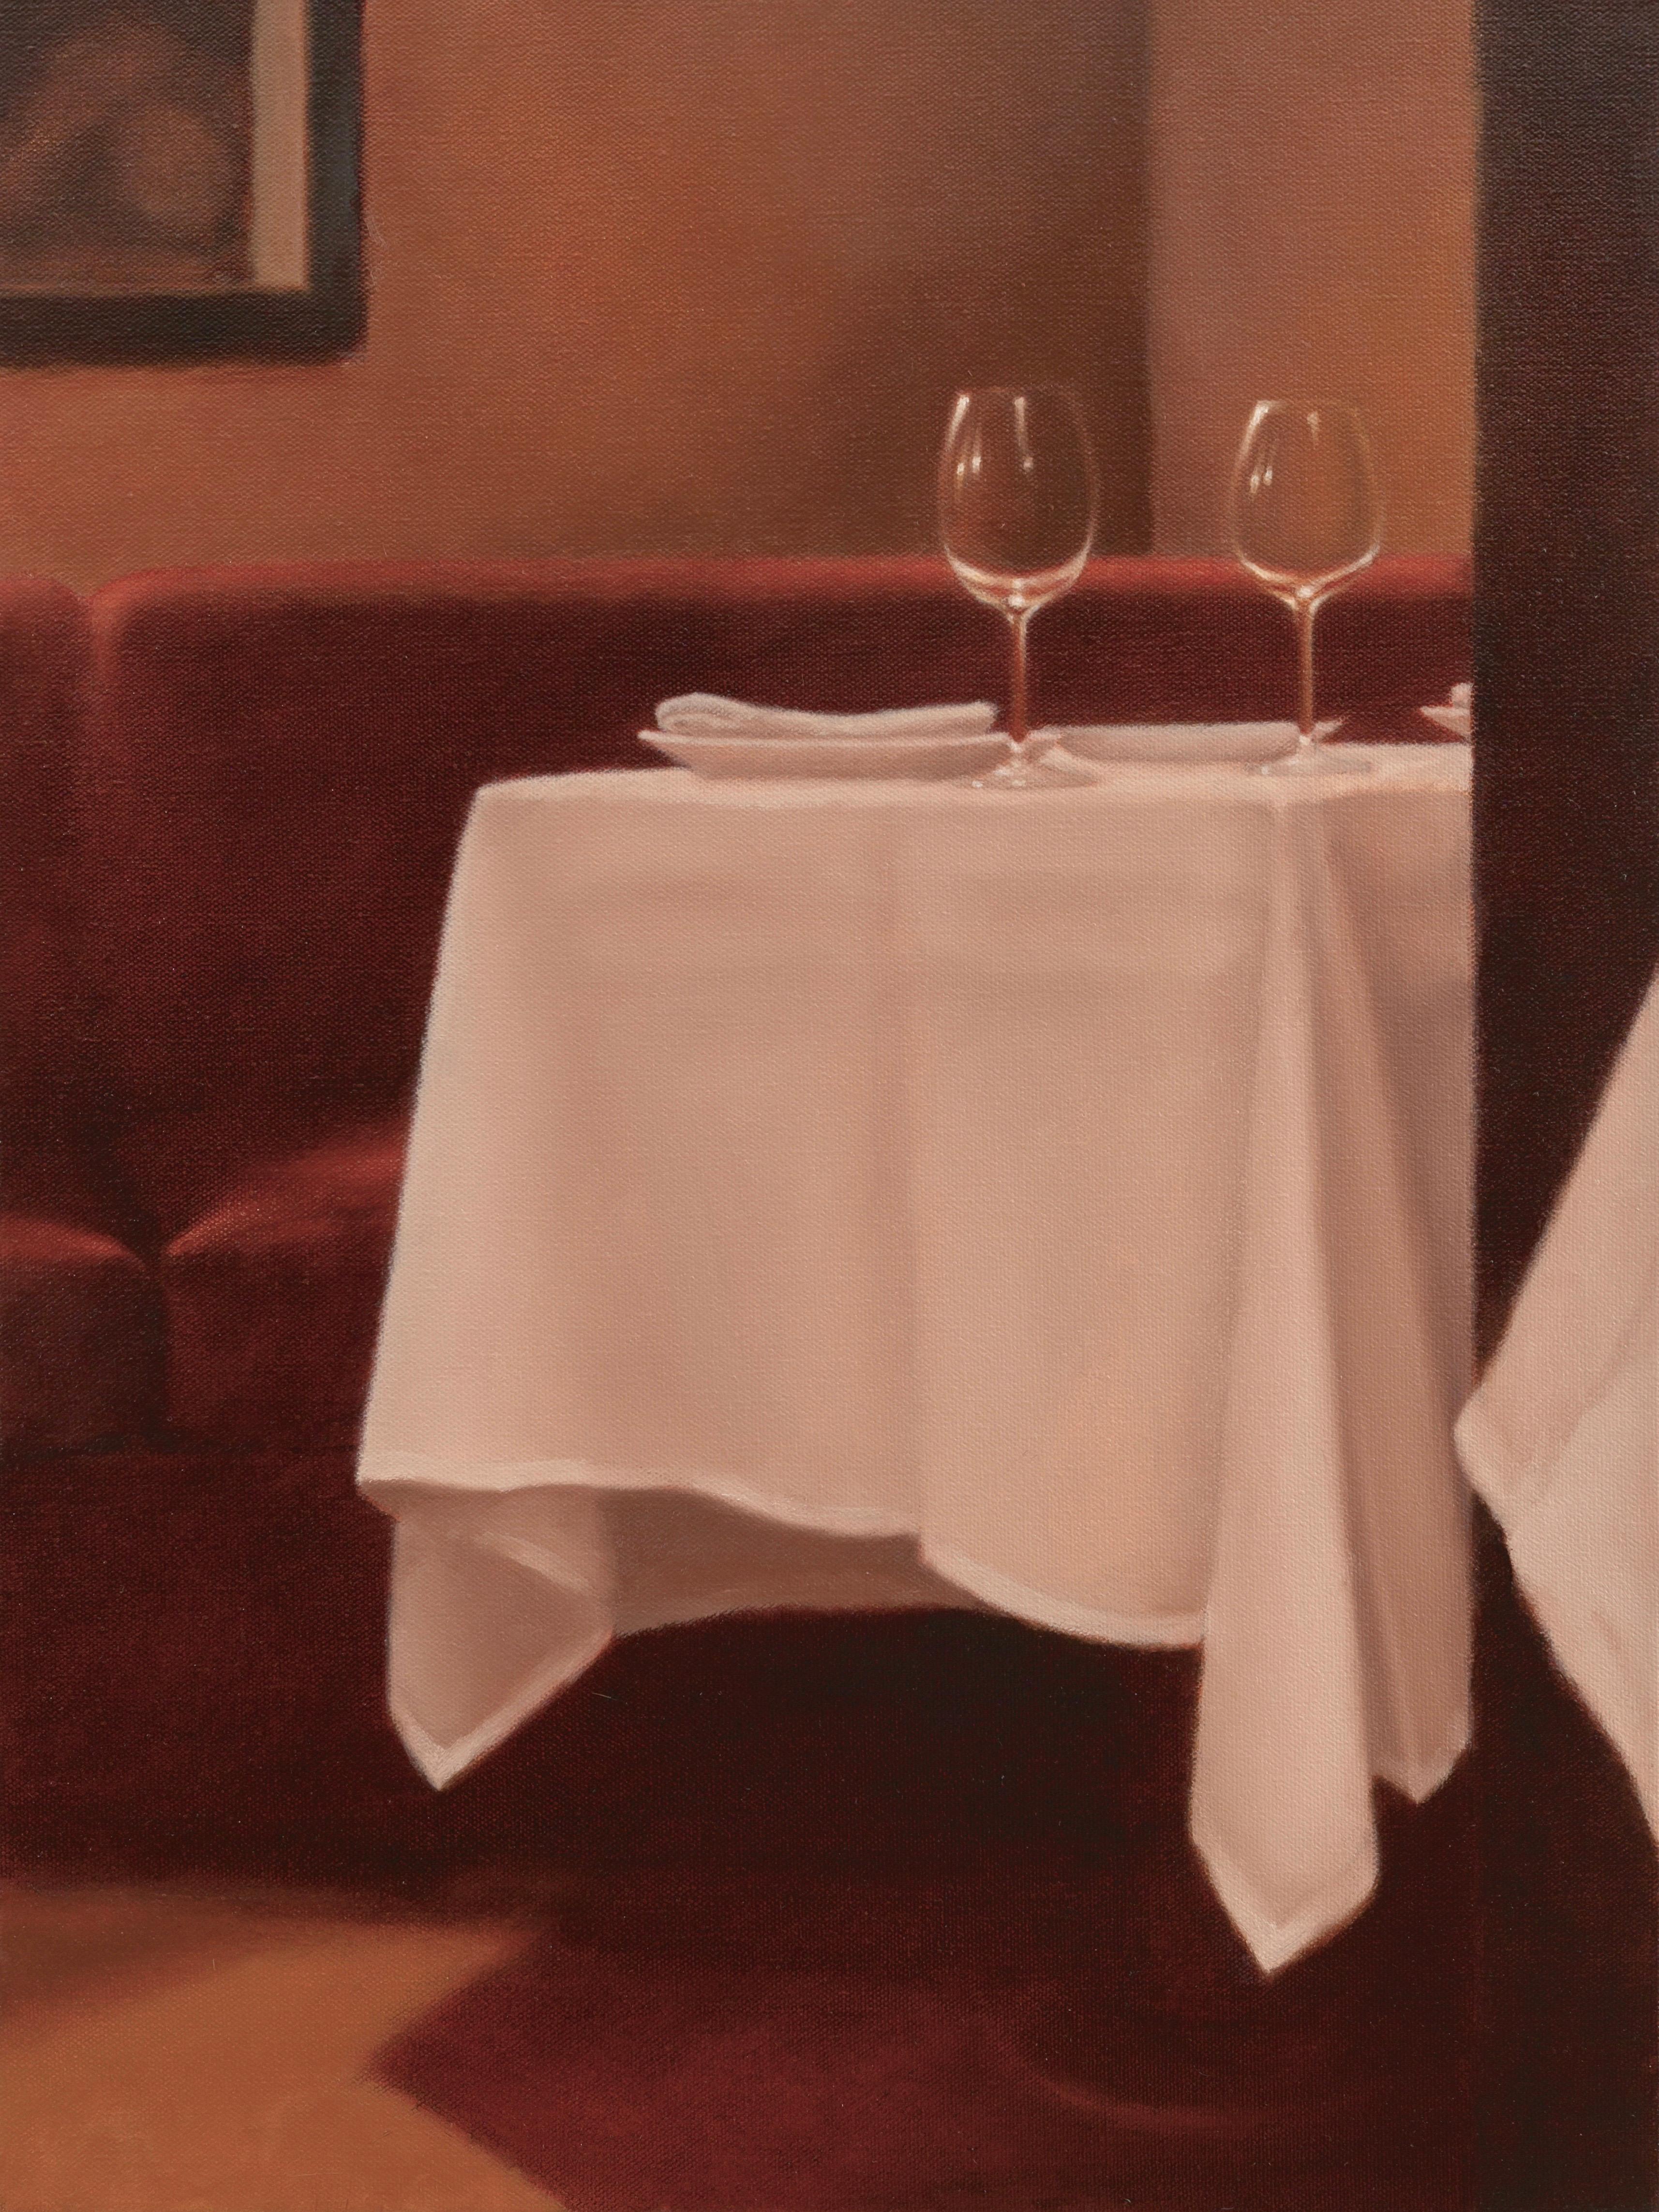 Mimi Jensen Still-Life Painting - On The Town: Date Night  / restaurant scene oil on canvas 